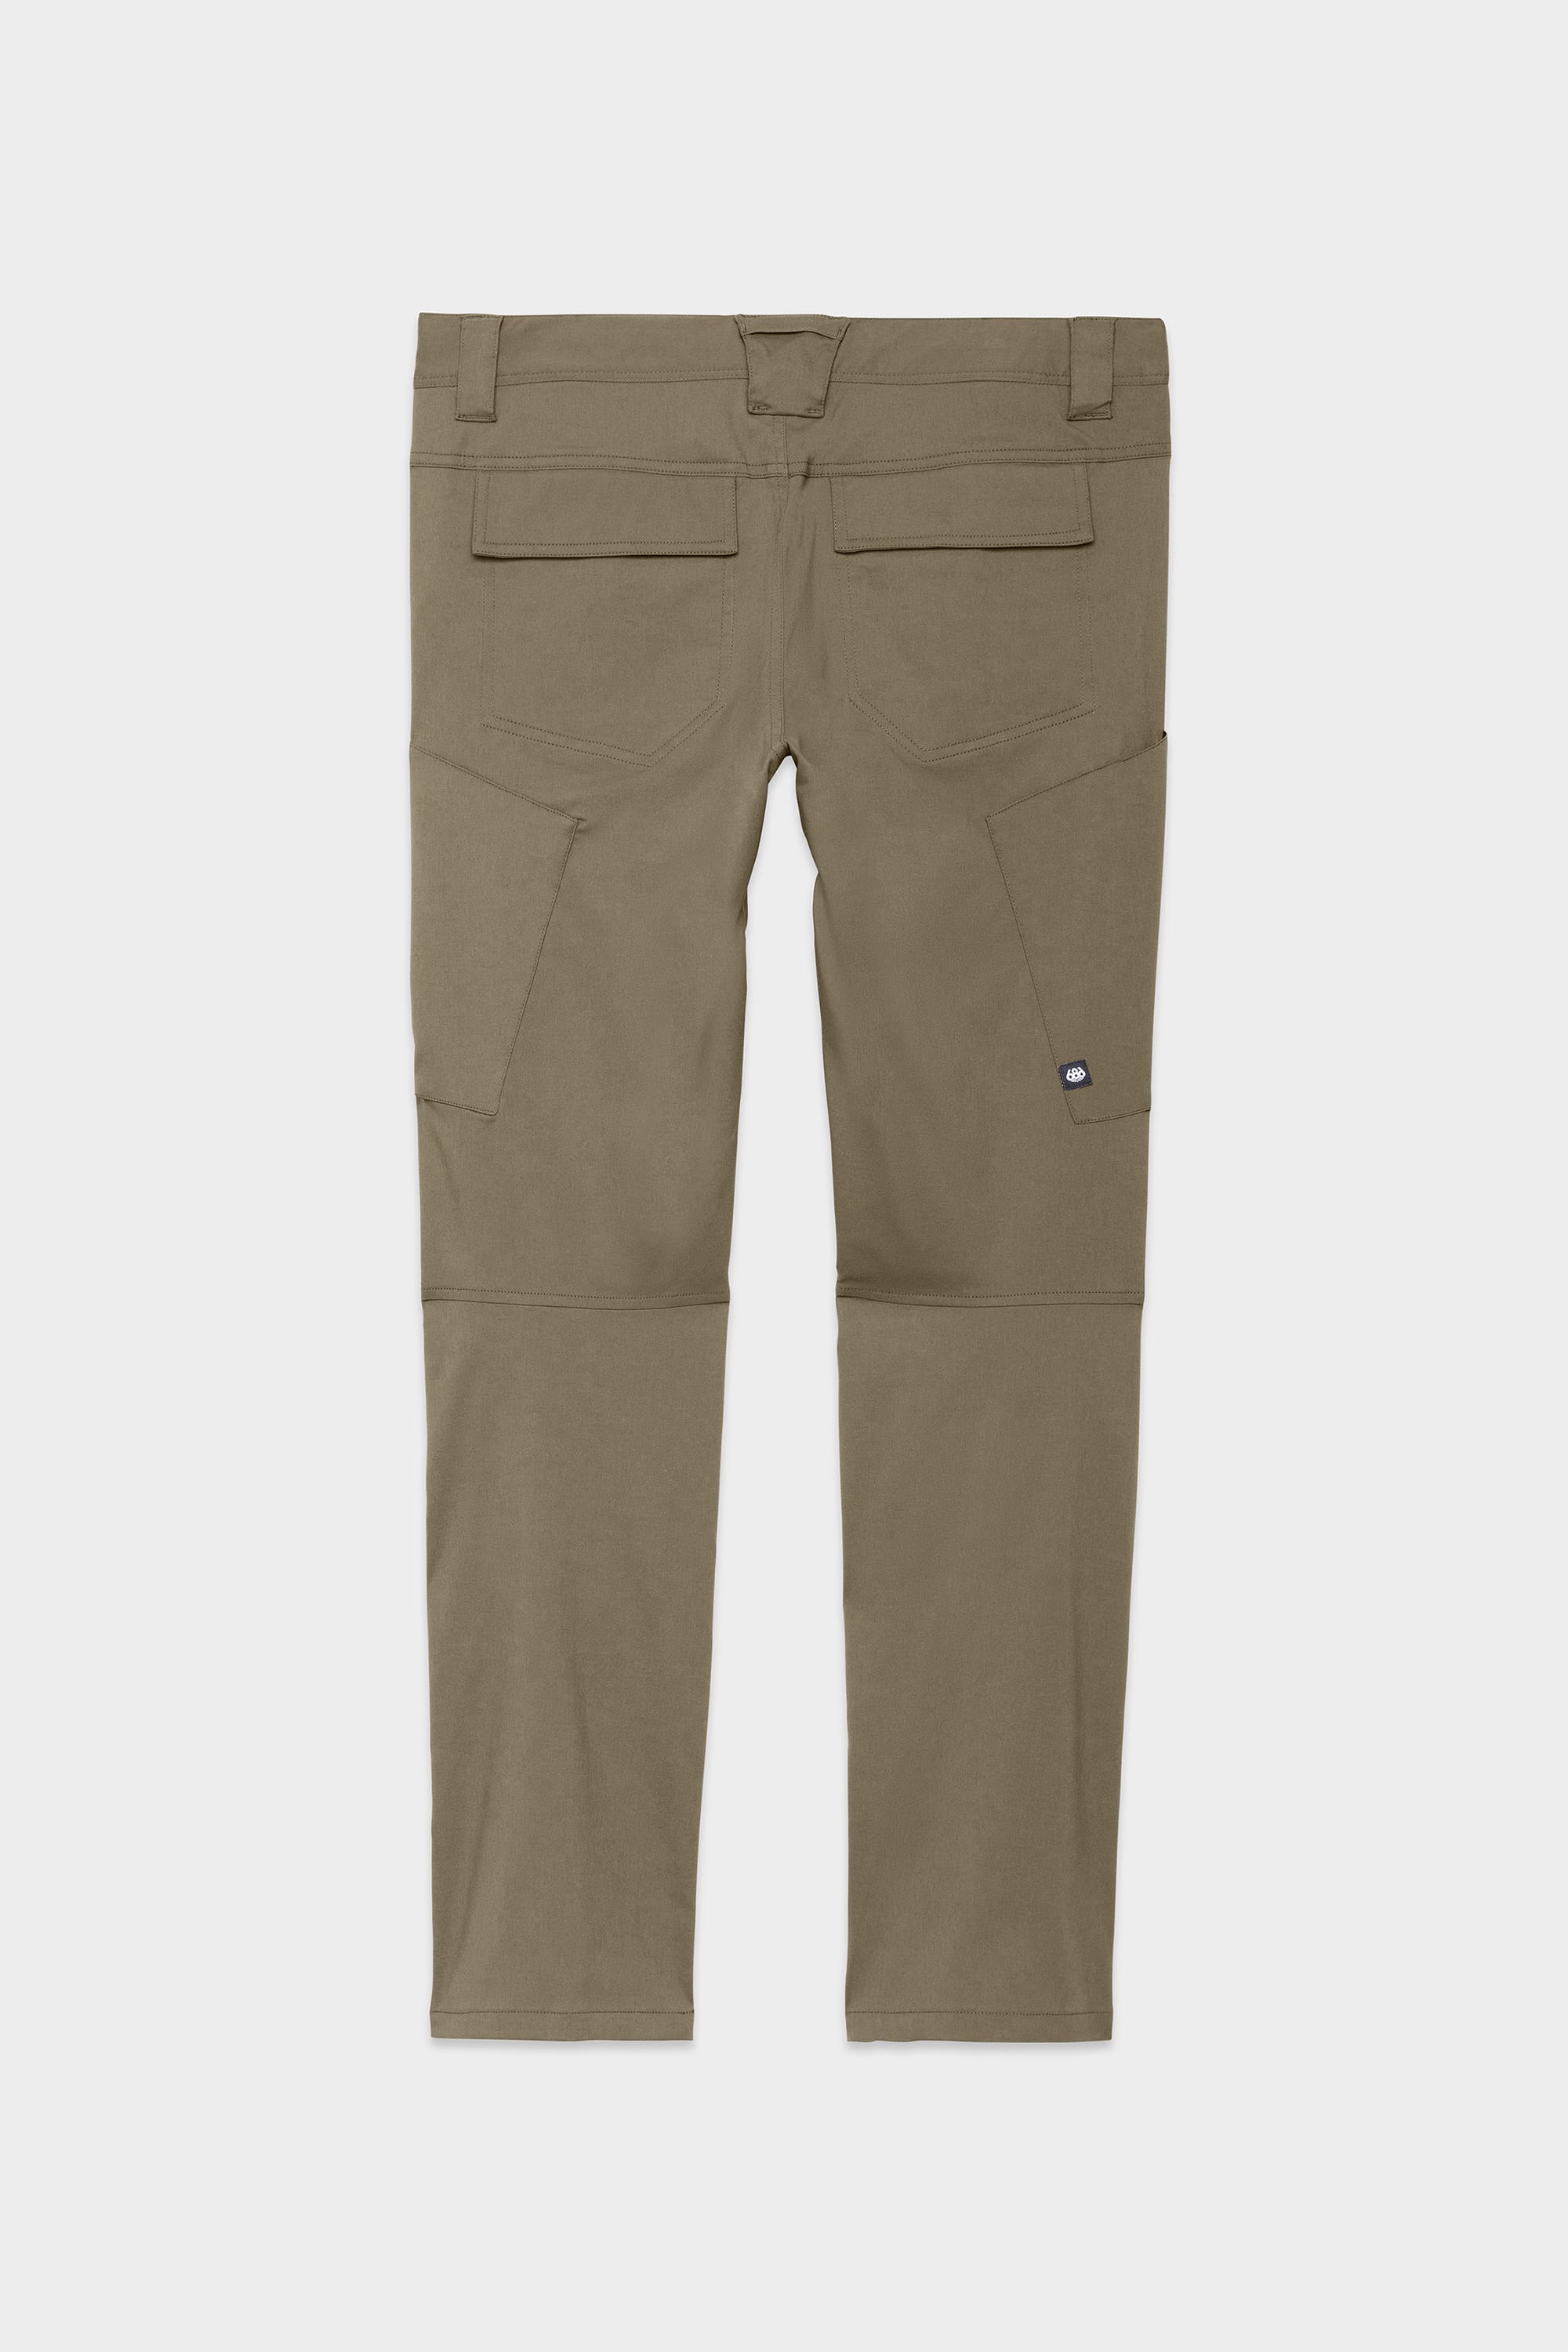 X RAY Men's Slim-Fit Stretch Cargo Pants, Flex Hiking Casual Multi Pockets  Work Pant, Jet Black, 32W x 30L - Walmart.com